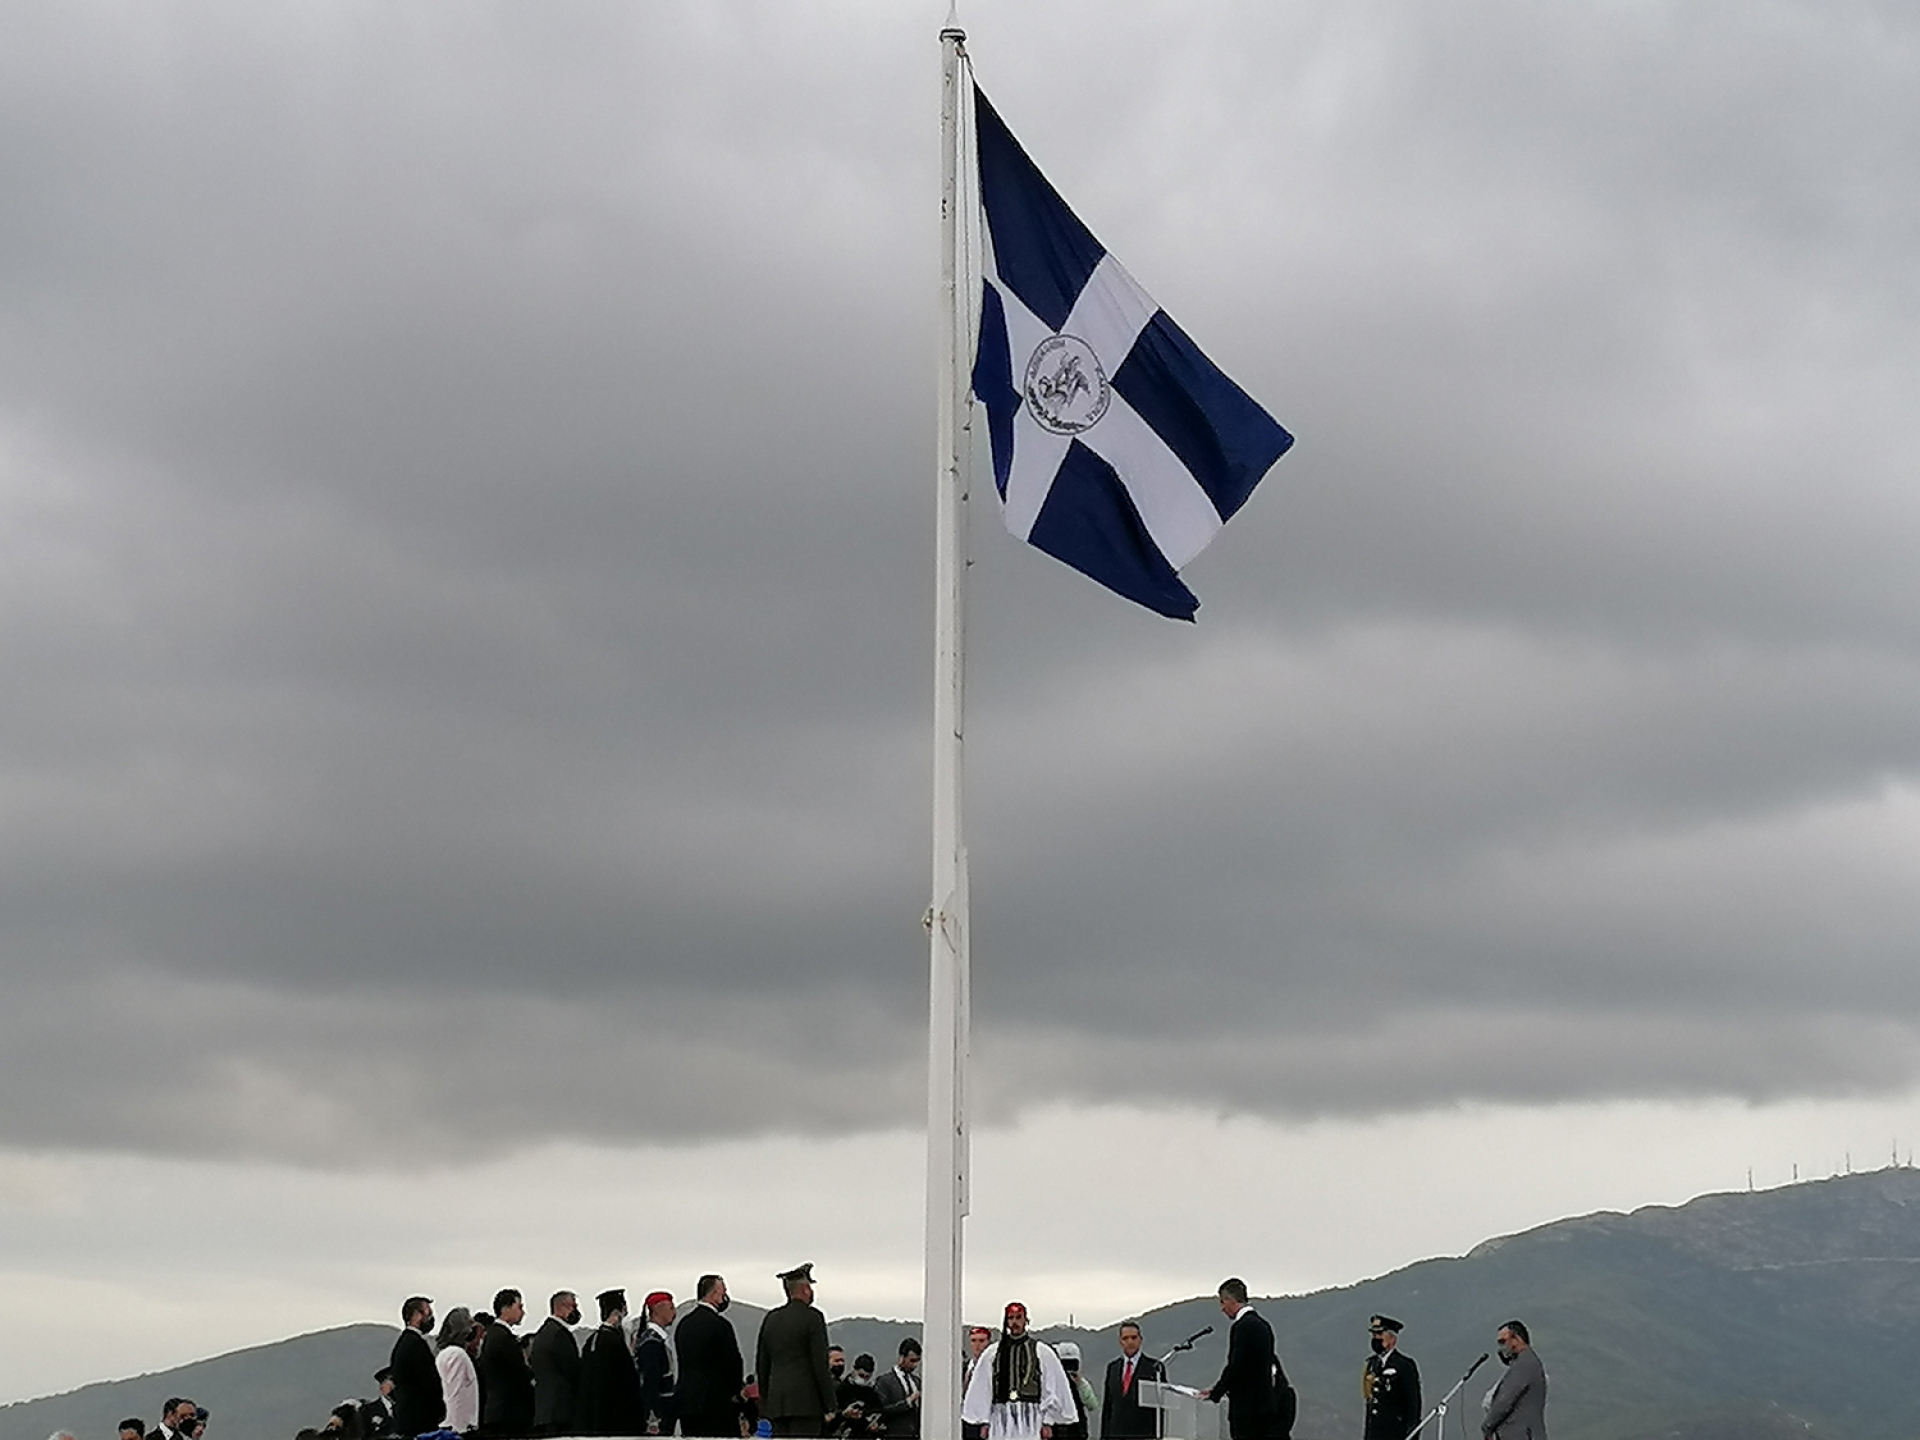 Η Σημαία του Συλλόγου των Αθηναίων κυματίζει για μία μόνο μέρα, στις 12 Οκτωβρίου κάθε χρόνου, στον βράχο της Ακρόπολης